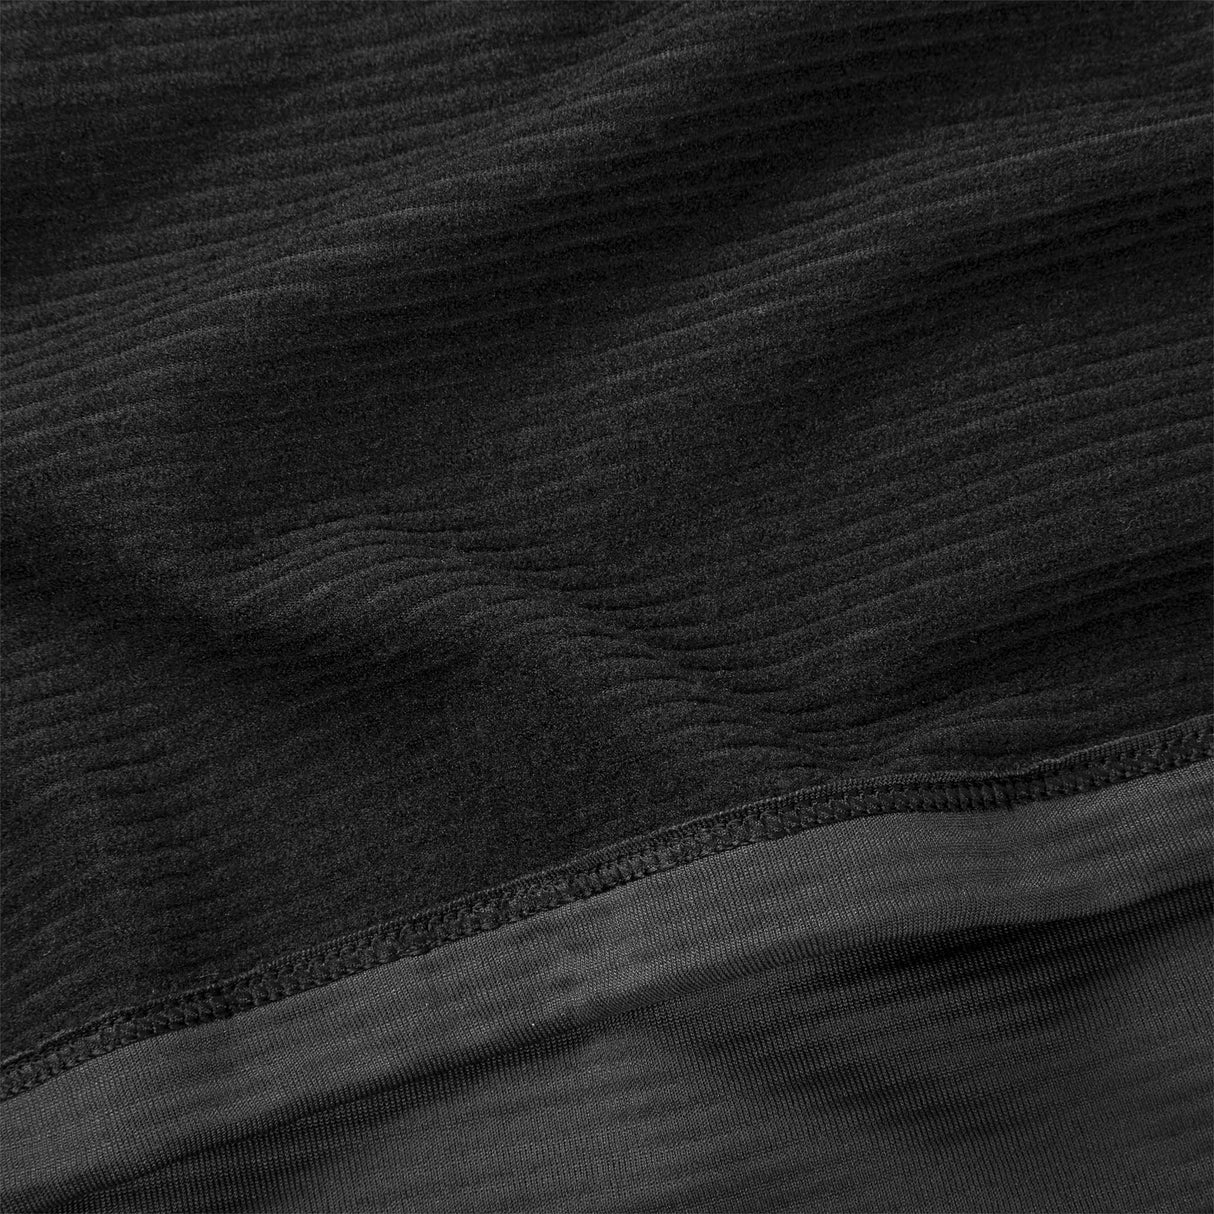 Chandail de course à pied à manches longues Brooks Notch Thermal 2.0 noir homme detail textile